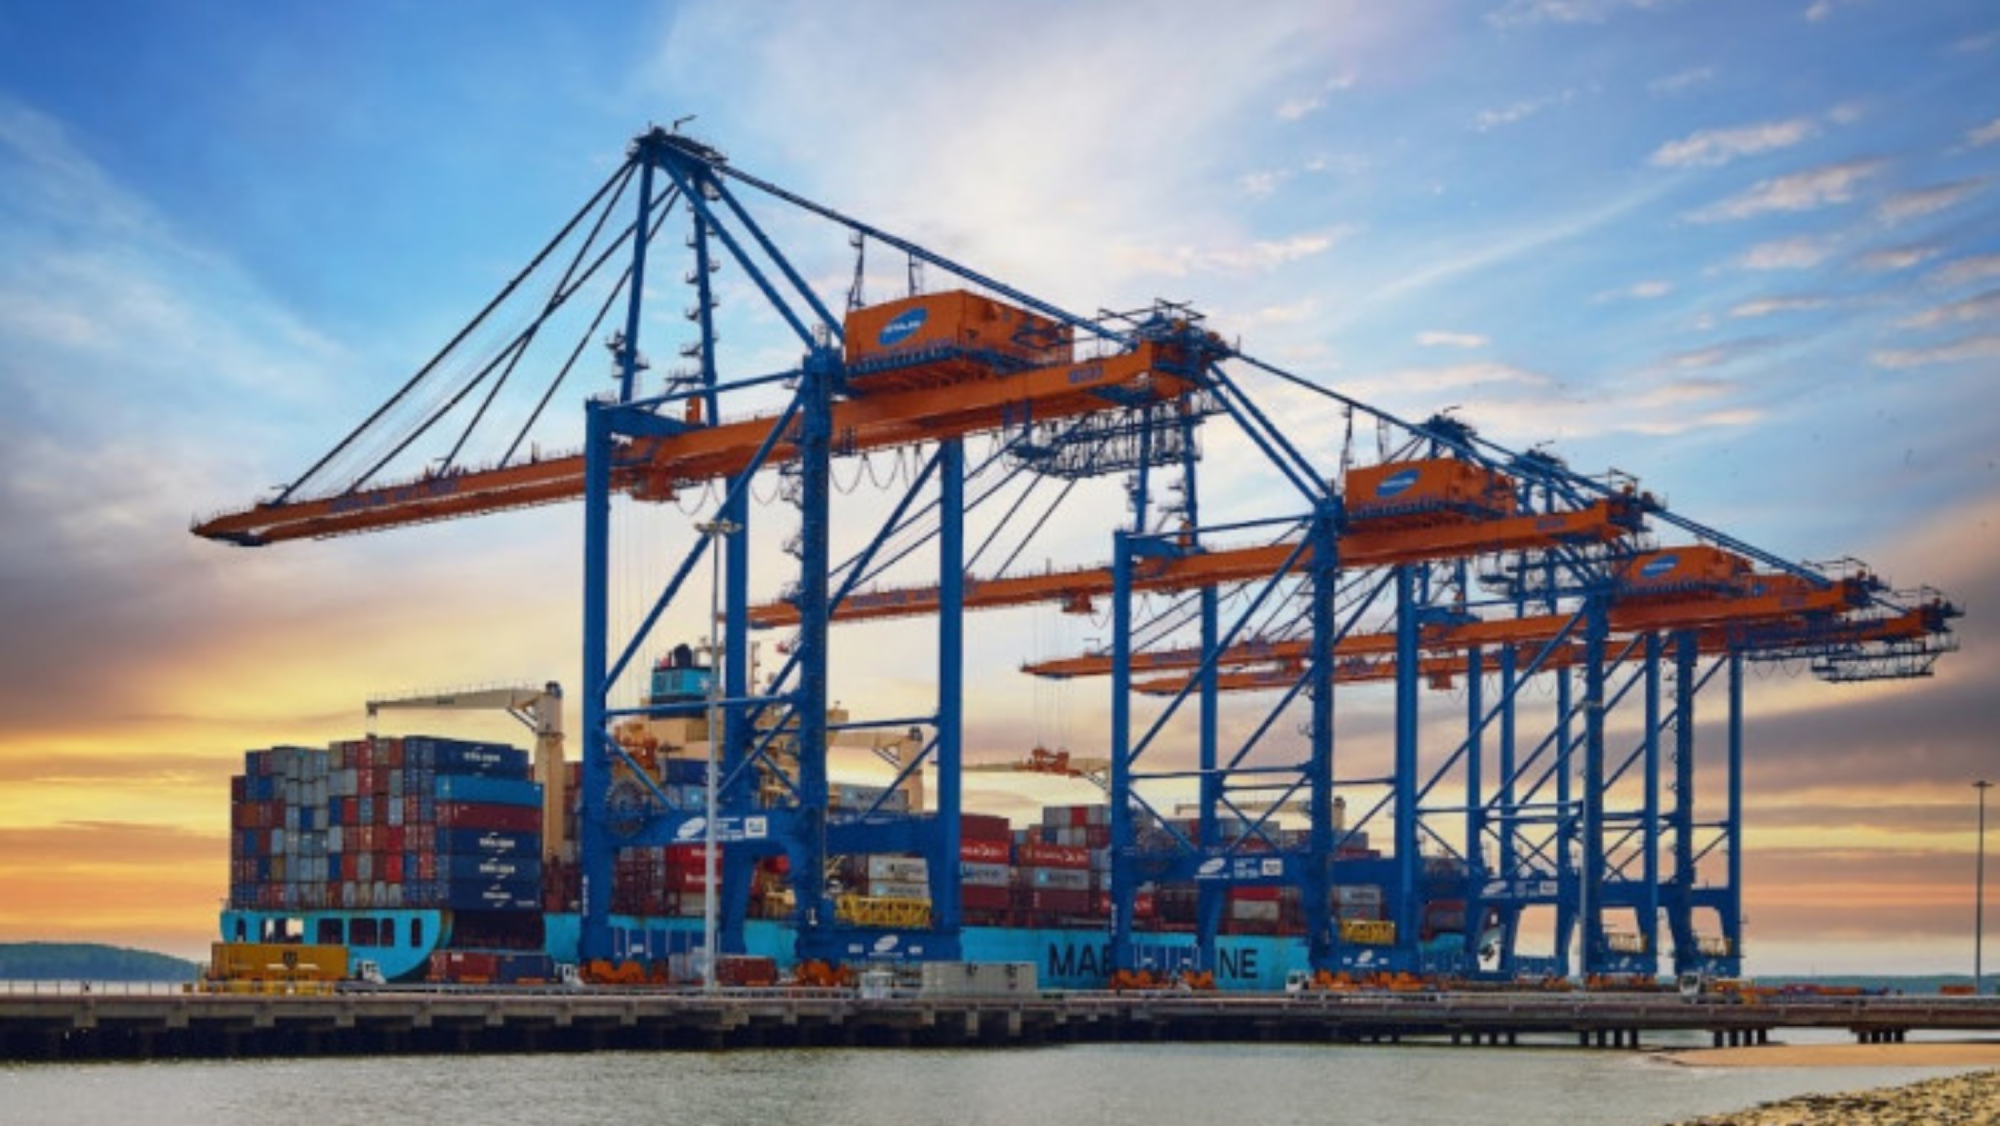 Giá dịch vụ bốc dỡ container tại cảng biển Việt Nam chính thức chưa điều chỉnh